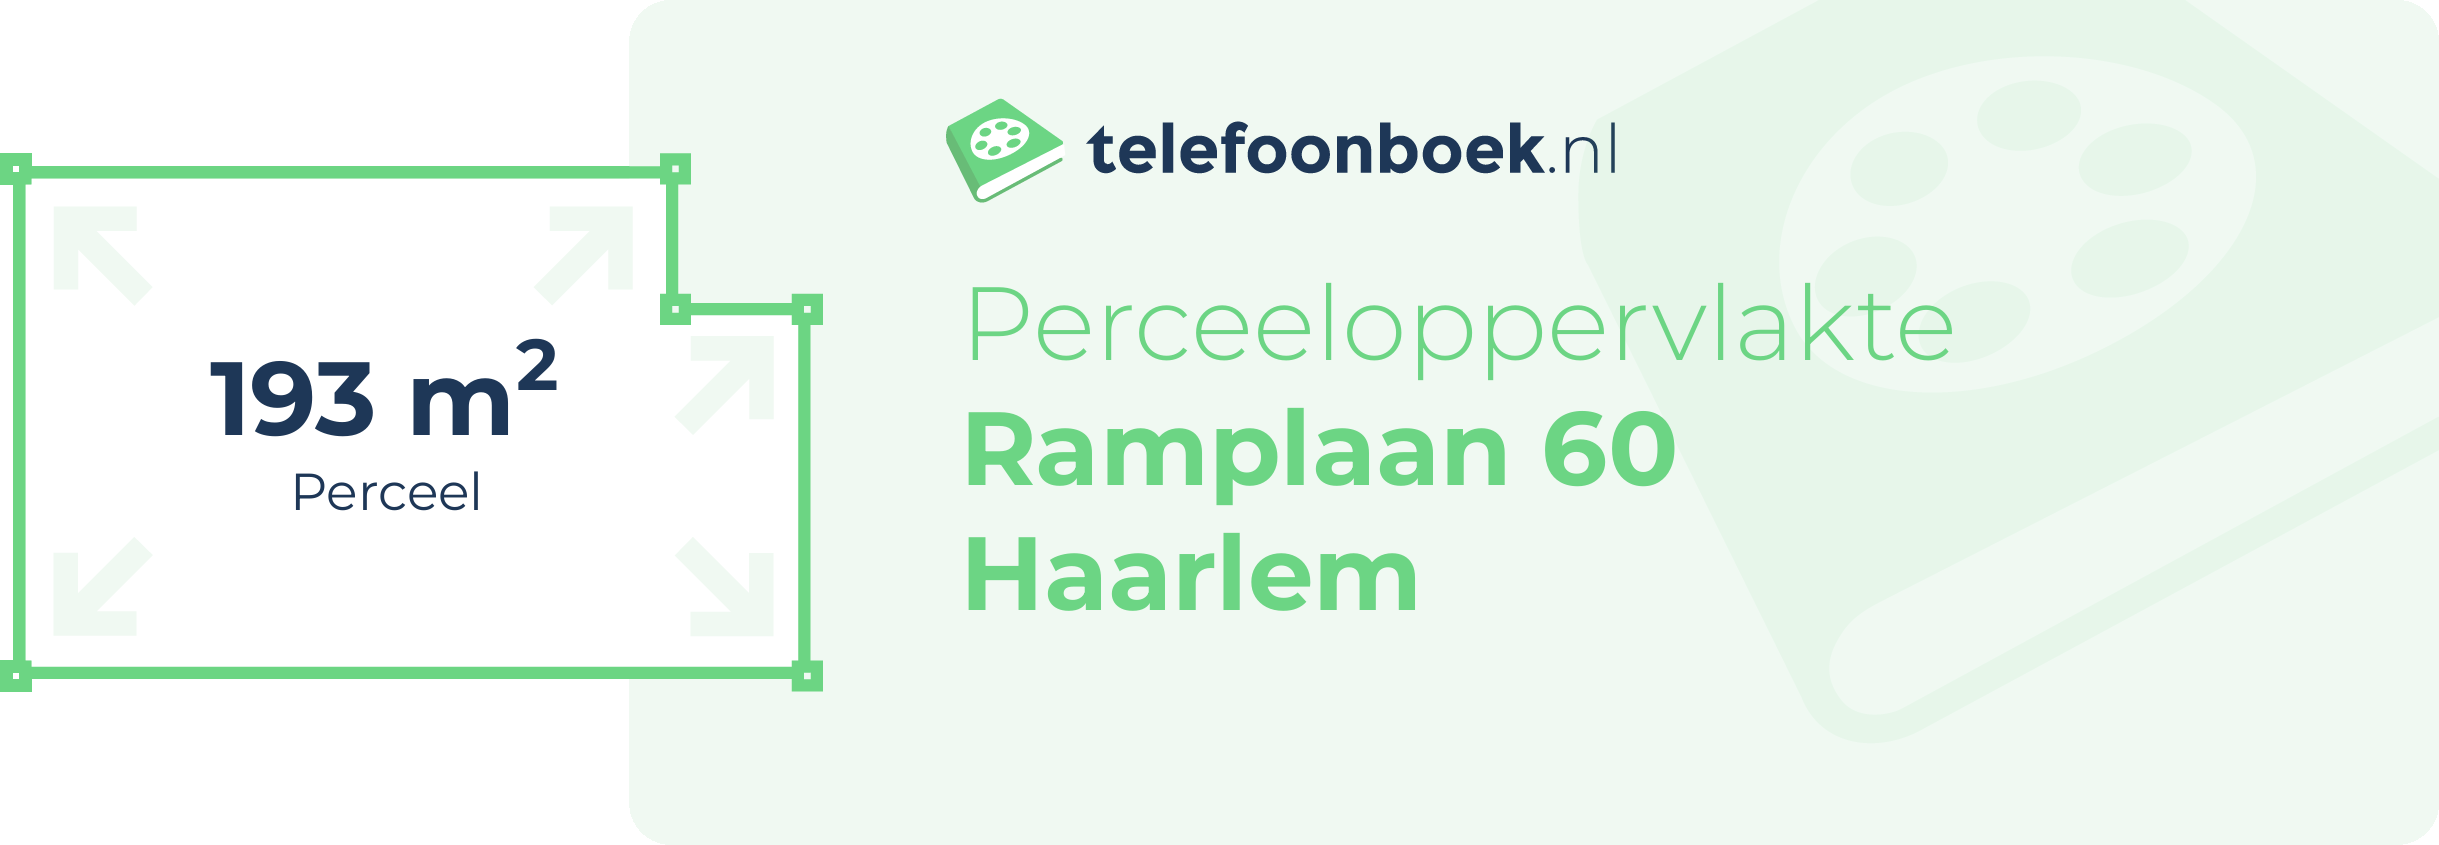 Perceeloppervlakte Ramplaan 60 Haarlem